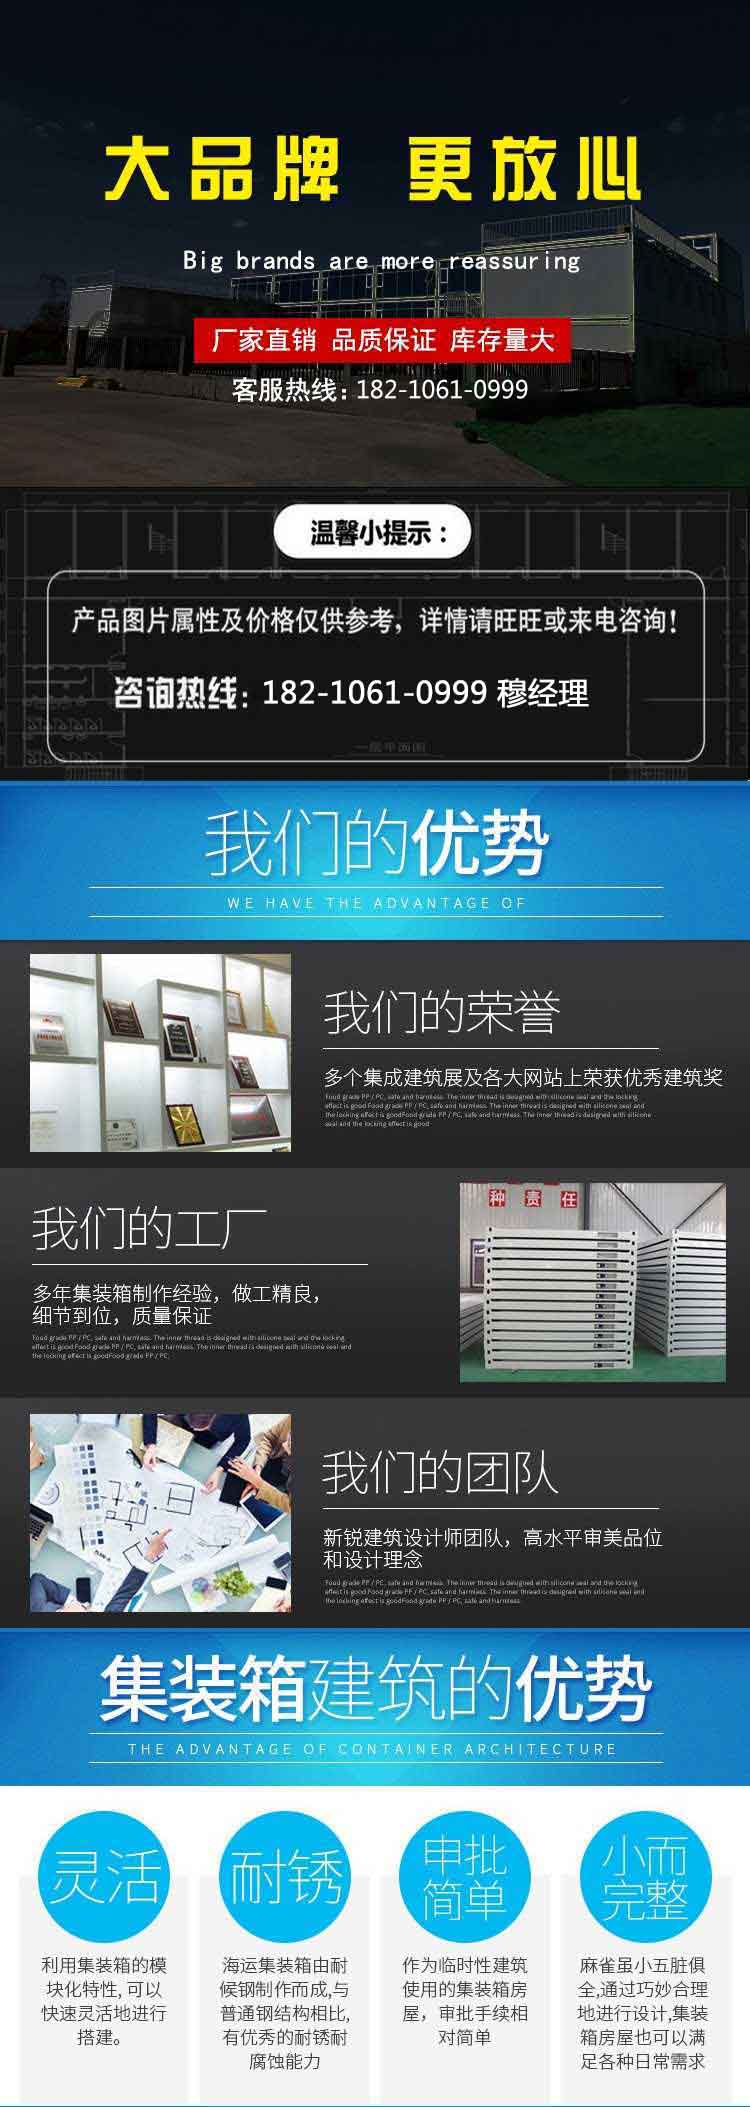 天津法利莱移动板房租赁有限公司提供“试点”集装箱住宅(图)(图6)